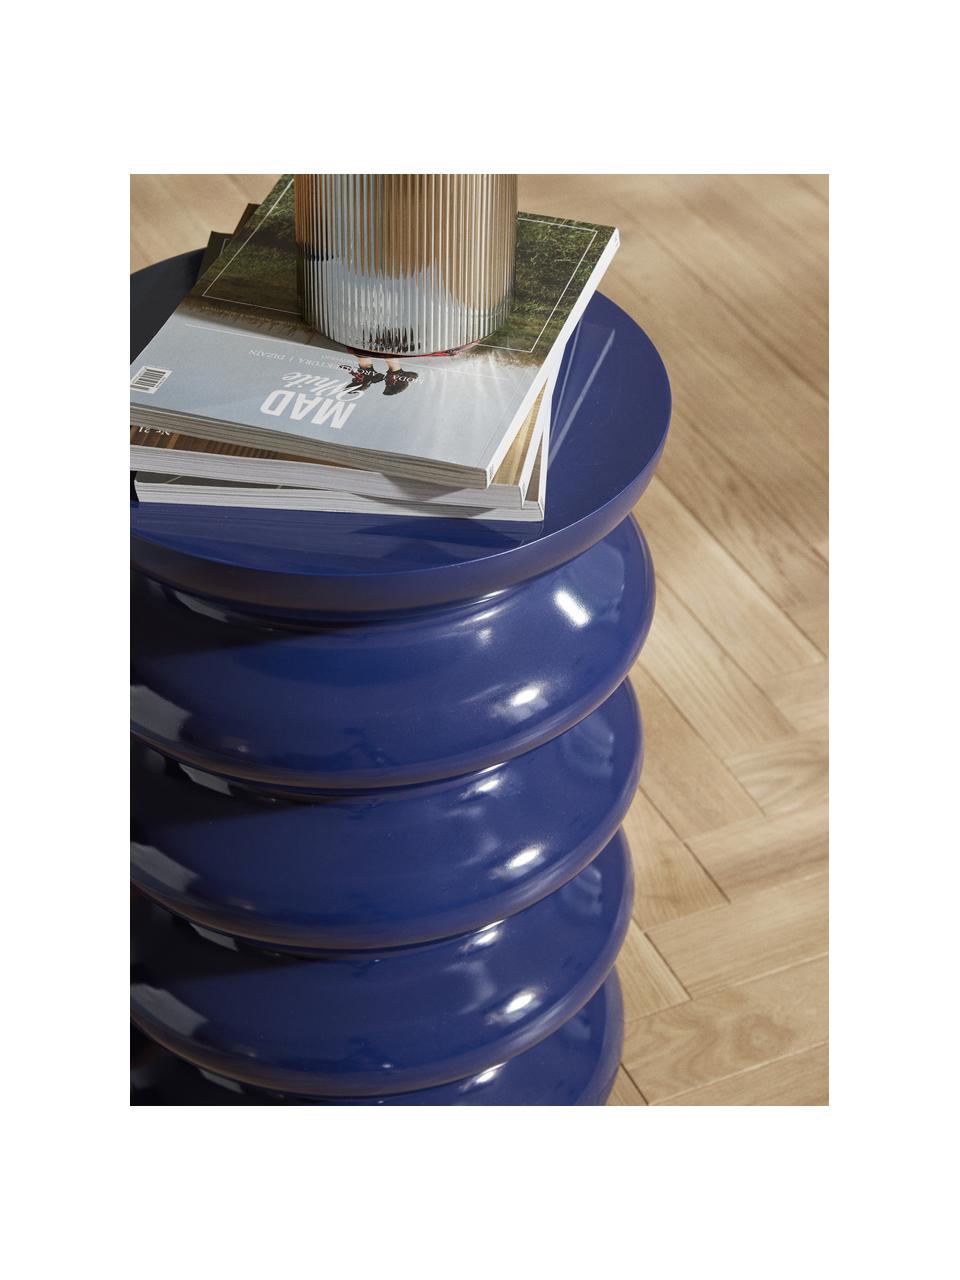 Table d'appoint ronde Illy, MDF laqué

Ce produit est fabriqué à partir de bois certifié FSC® issu d'une exploitation durable, Bleu foncé, Ø 35 x haut. 50 cm